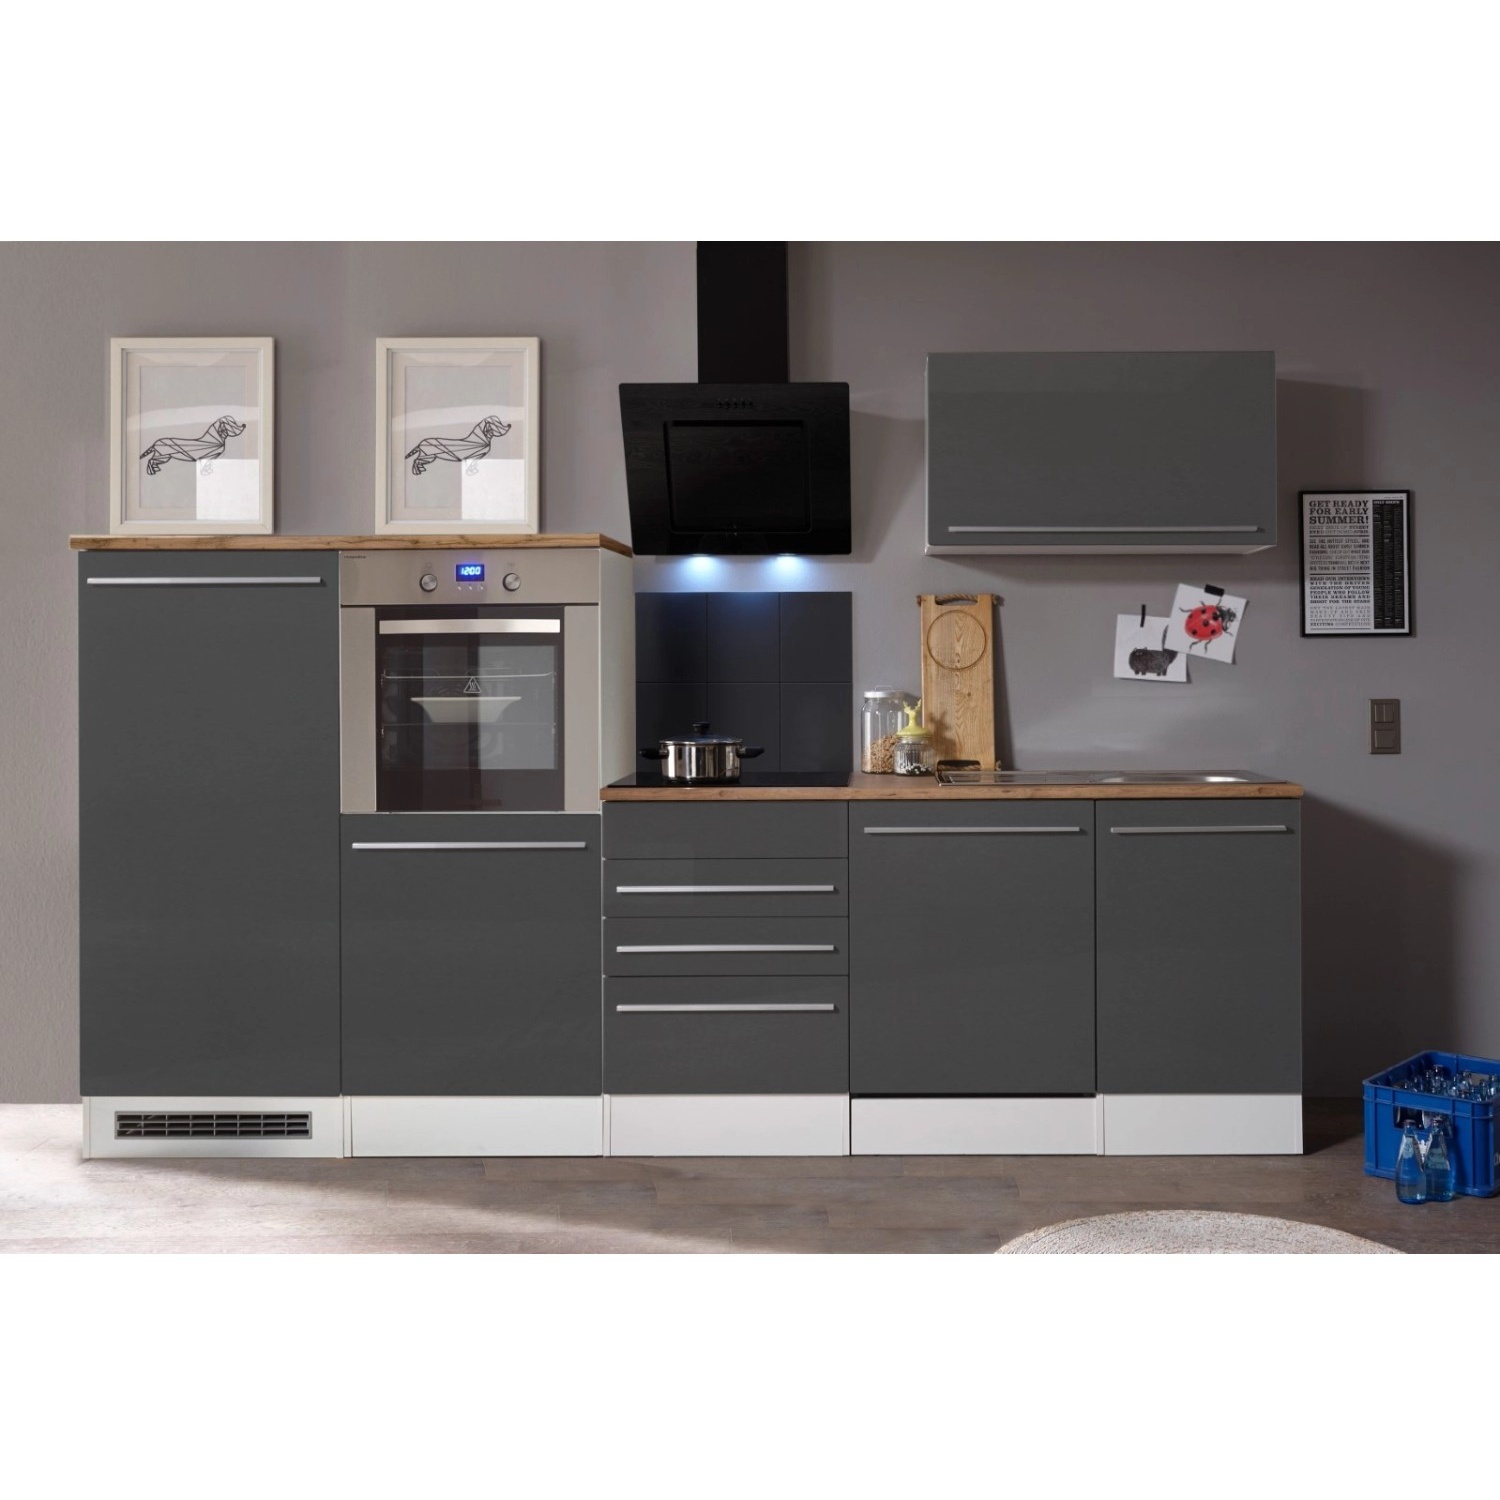 Bild von Küchenzeile Gabriel Doppelblock 290 cm E-Geräte grau hochglänzend